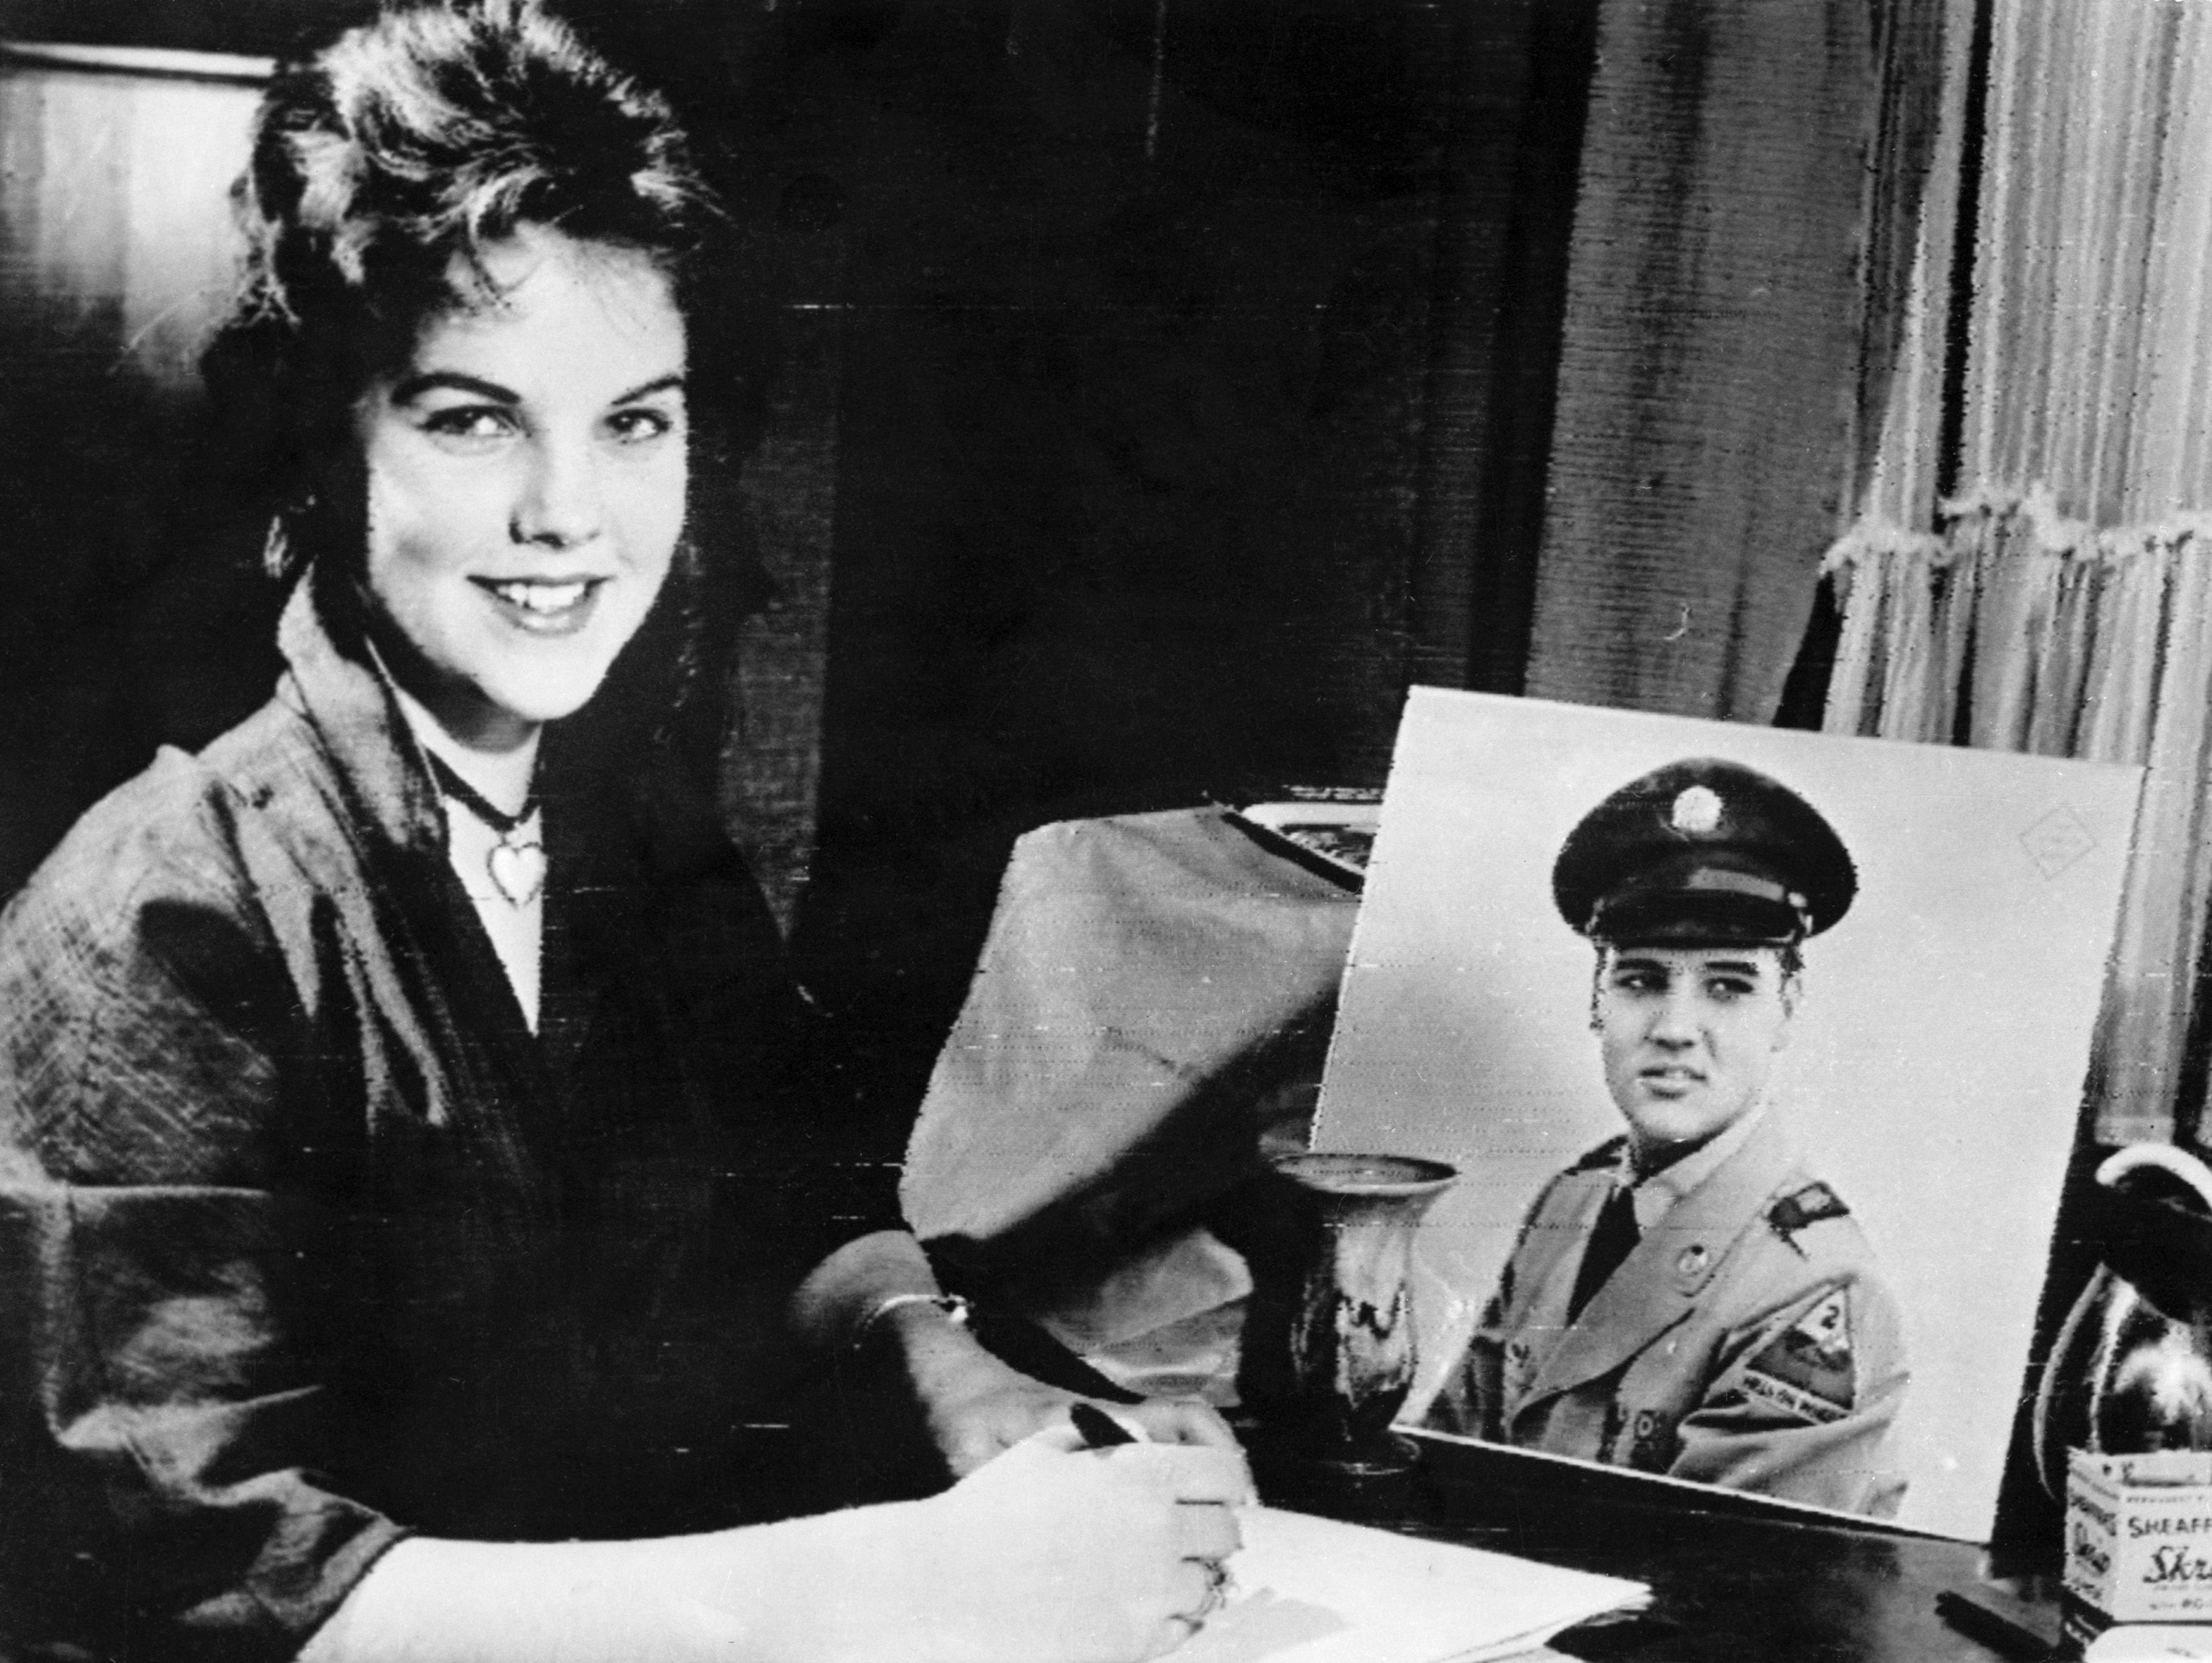 Priscilla Presley with a photo of Elvis Presley